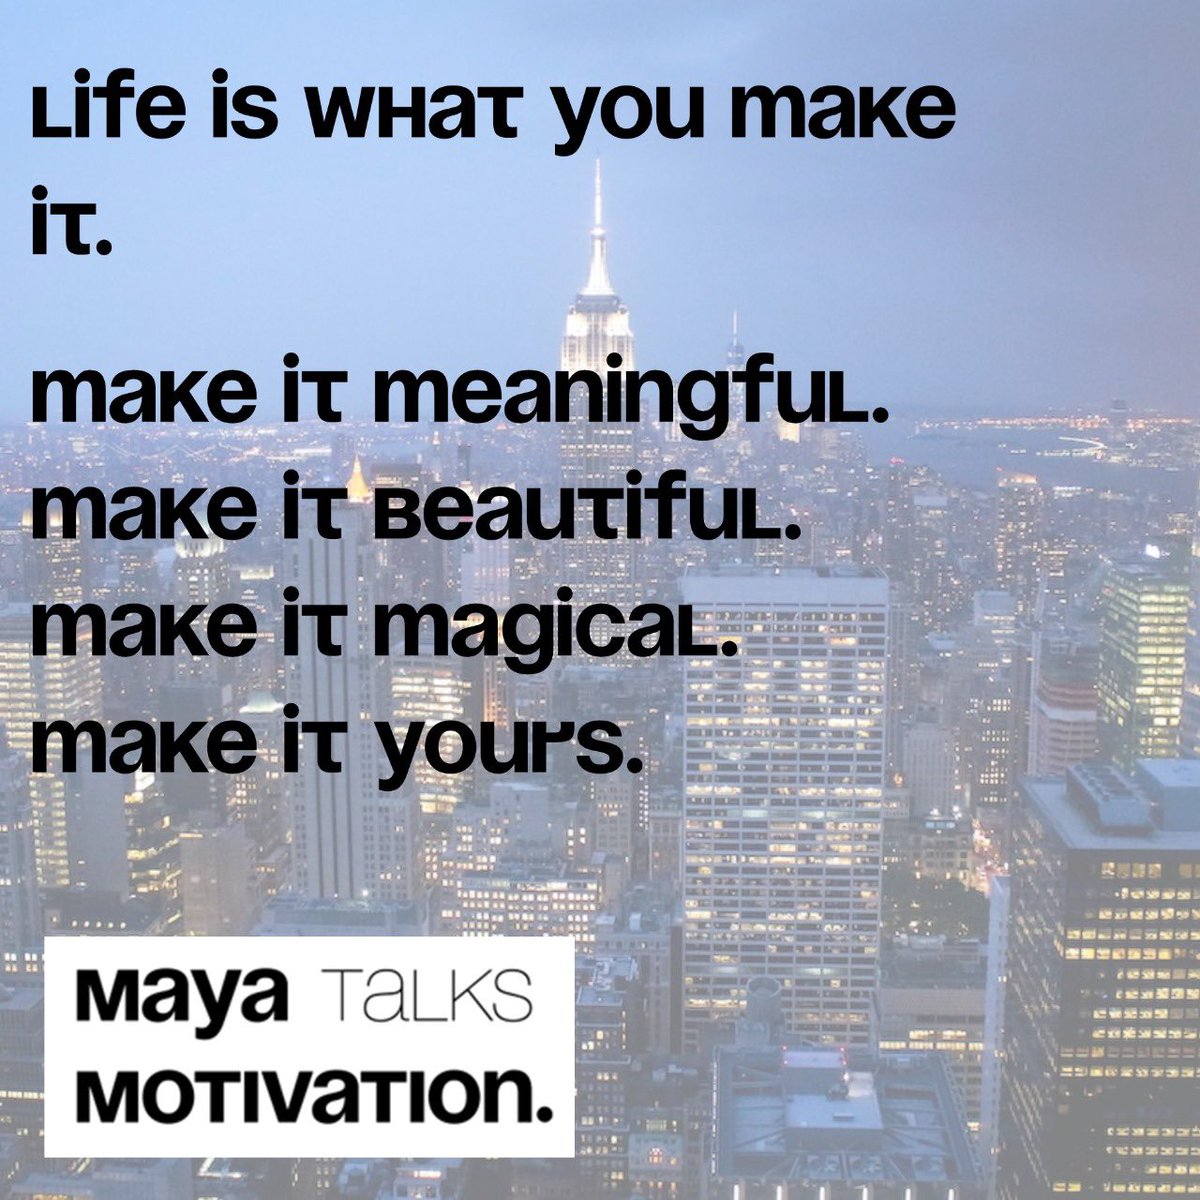 What will you make of it today? 

#MayaTalks #MayaTalksMotivation 
#MorningMotivationWithMaya
#MotivationWithMaya
#FulfillYourUltimatePotential #ProfessionalSpeaker 
#Motivation #PositivePsychology #DailyMotivation #DailyInspiration #Motivate #Inspire #Life #LifeIsWhatYouMakeIt